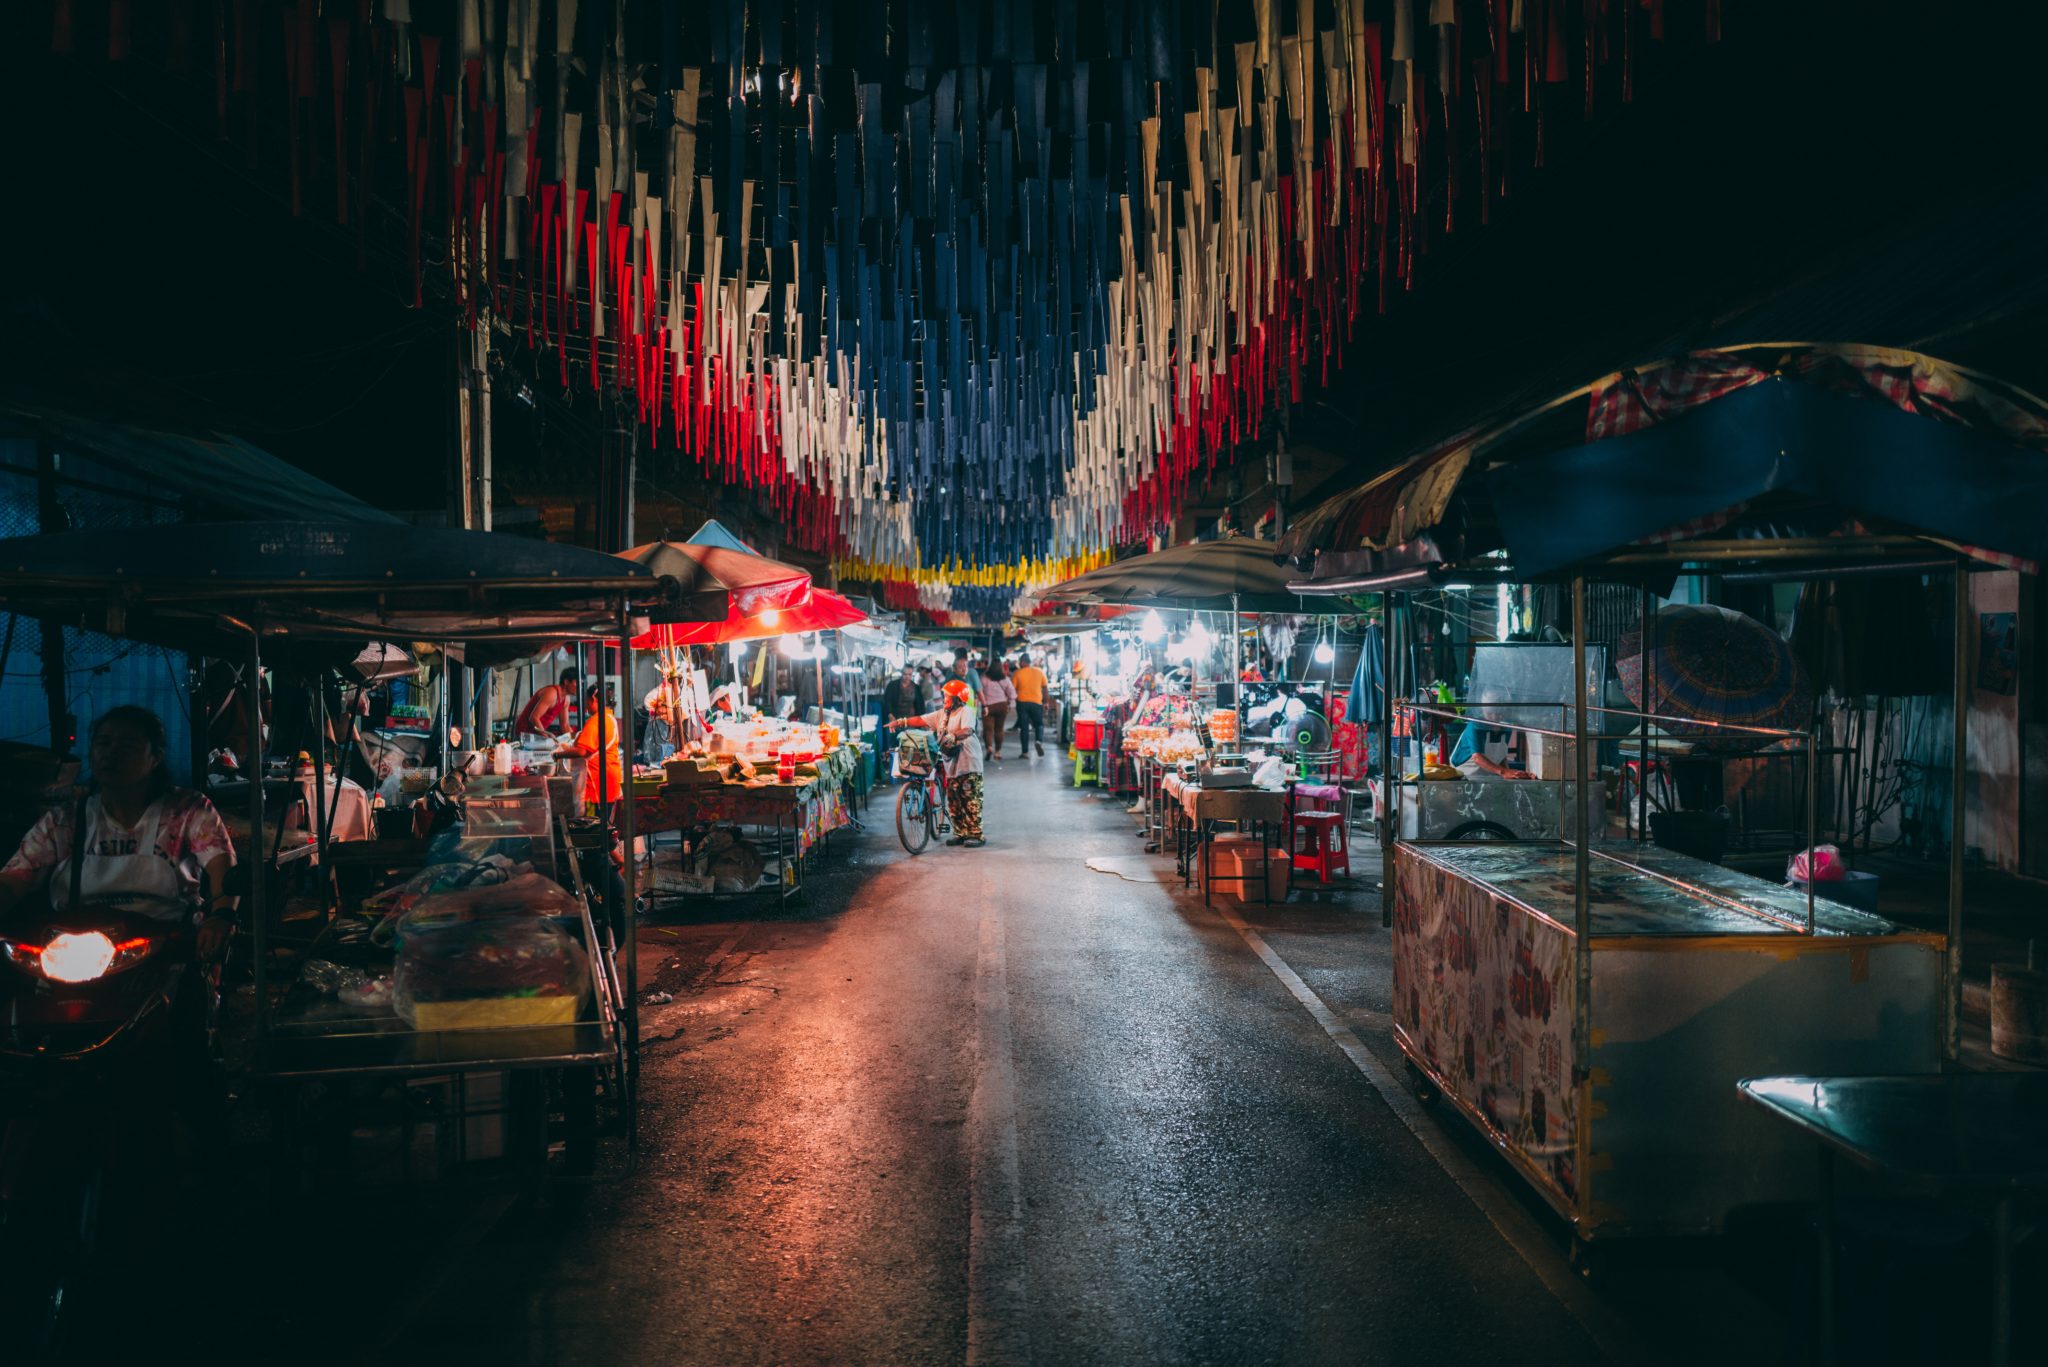 Tajlandia jedzenie uliczne street food nocny market